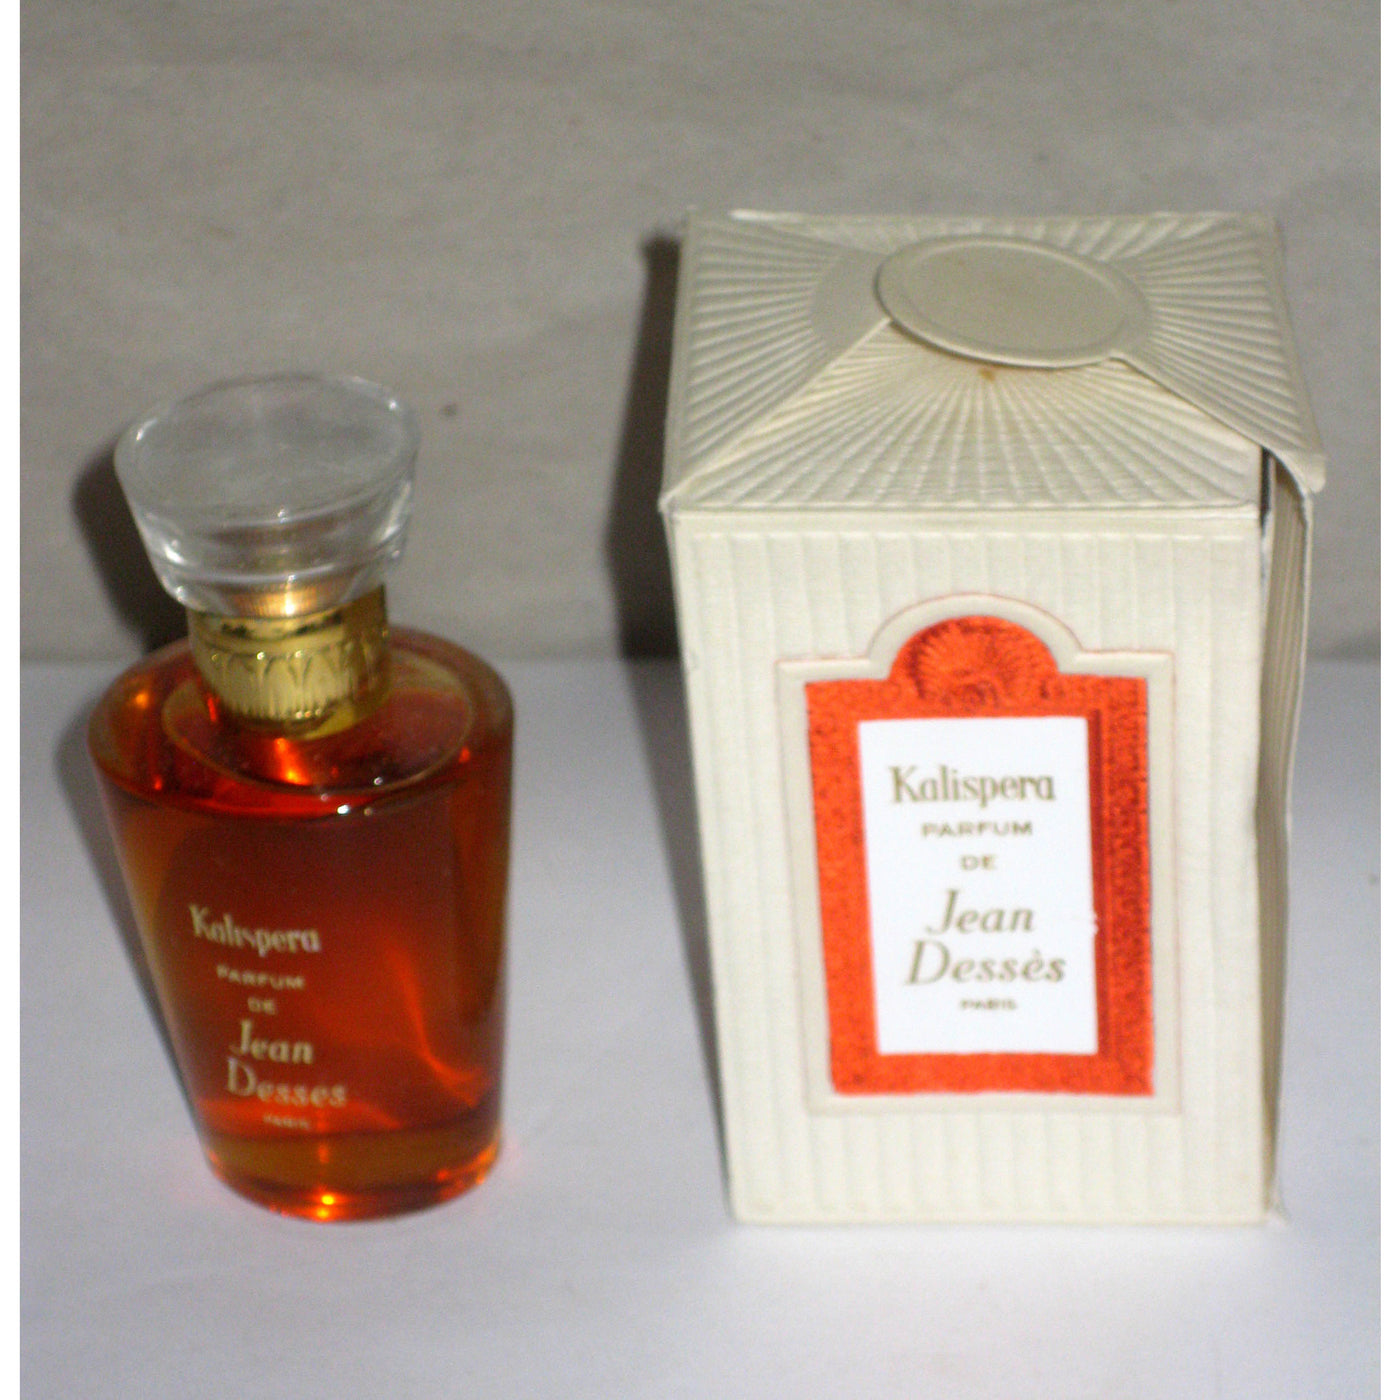 Vintage Jean Desses Kalispera Parfum